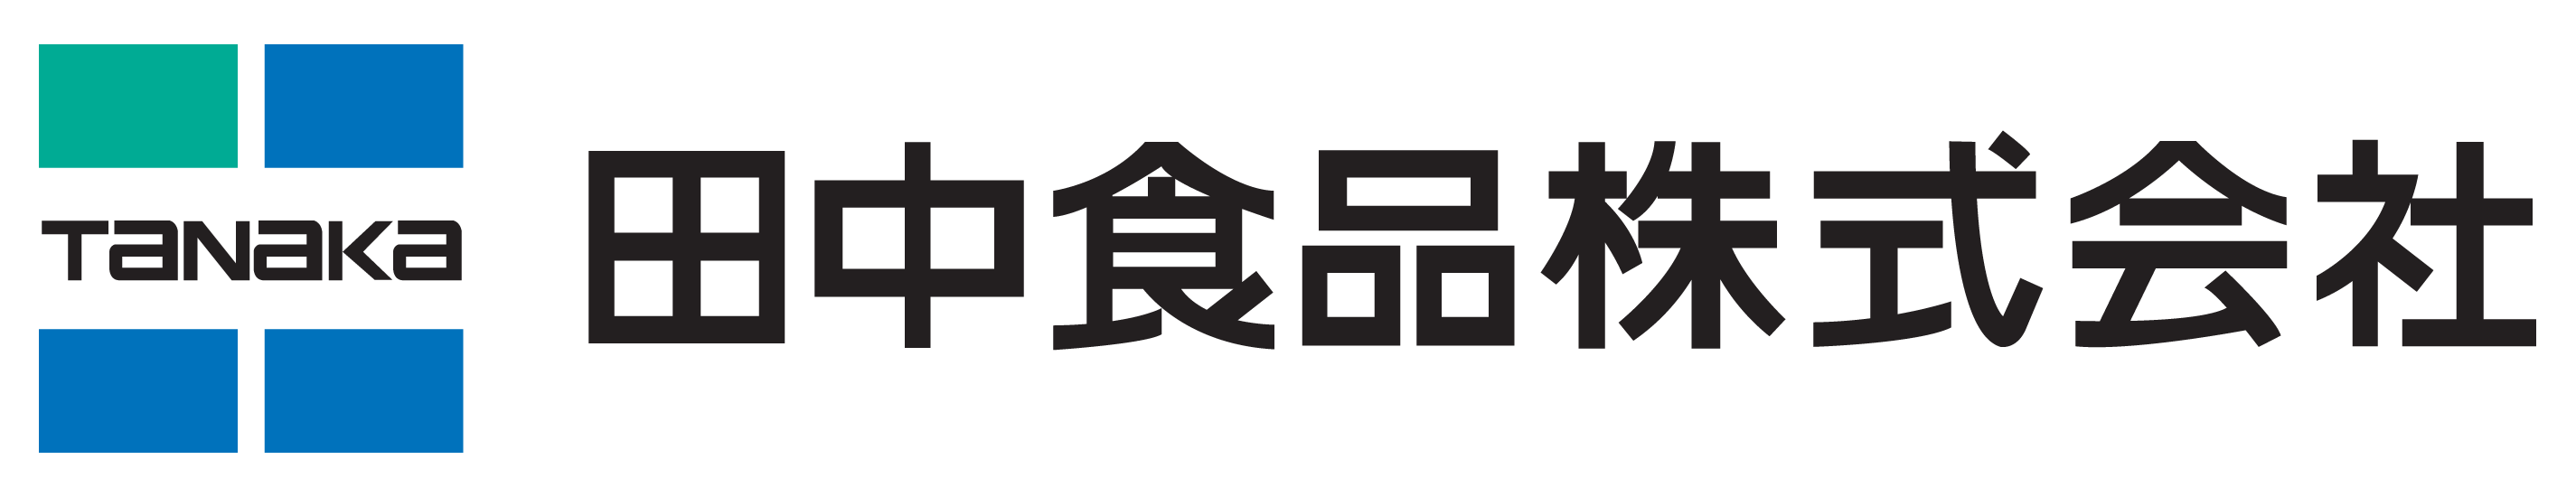 田中食品ロゴ